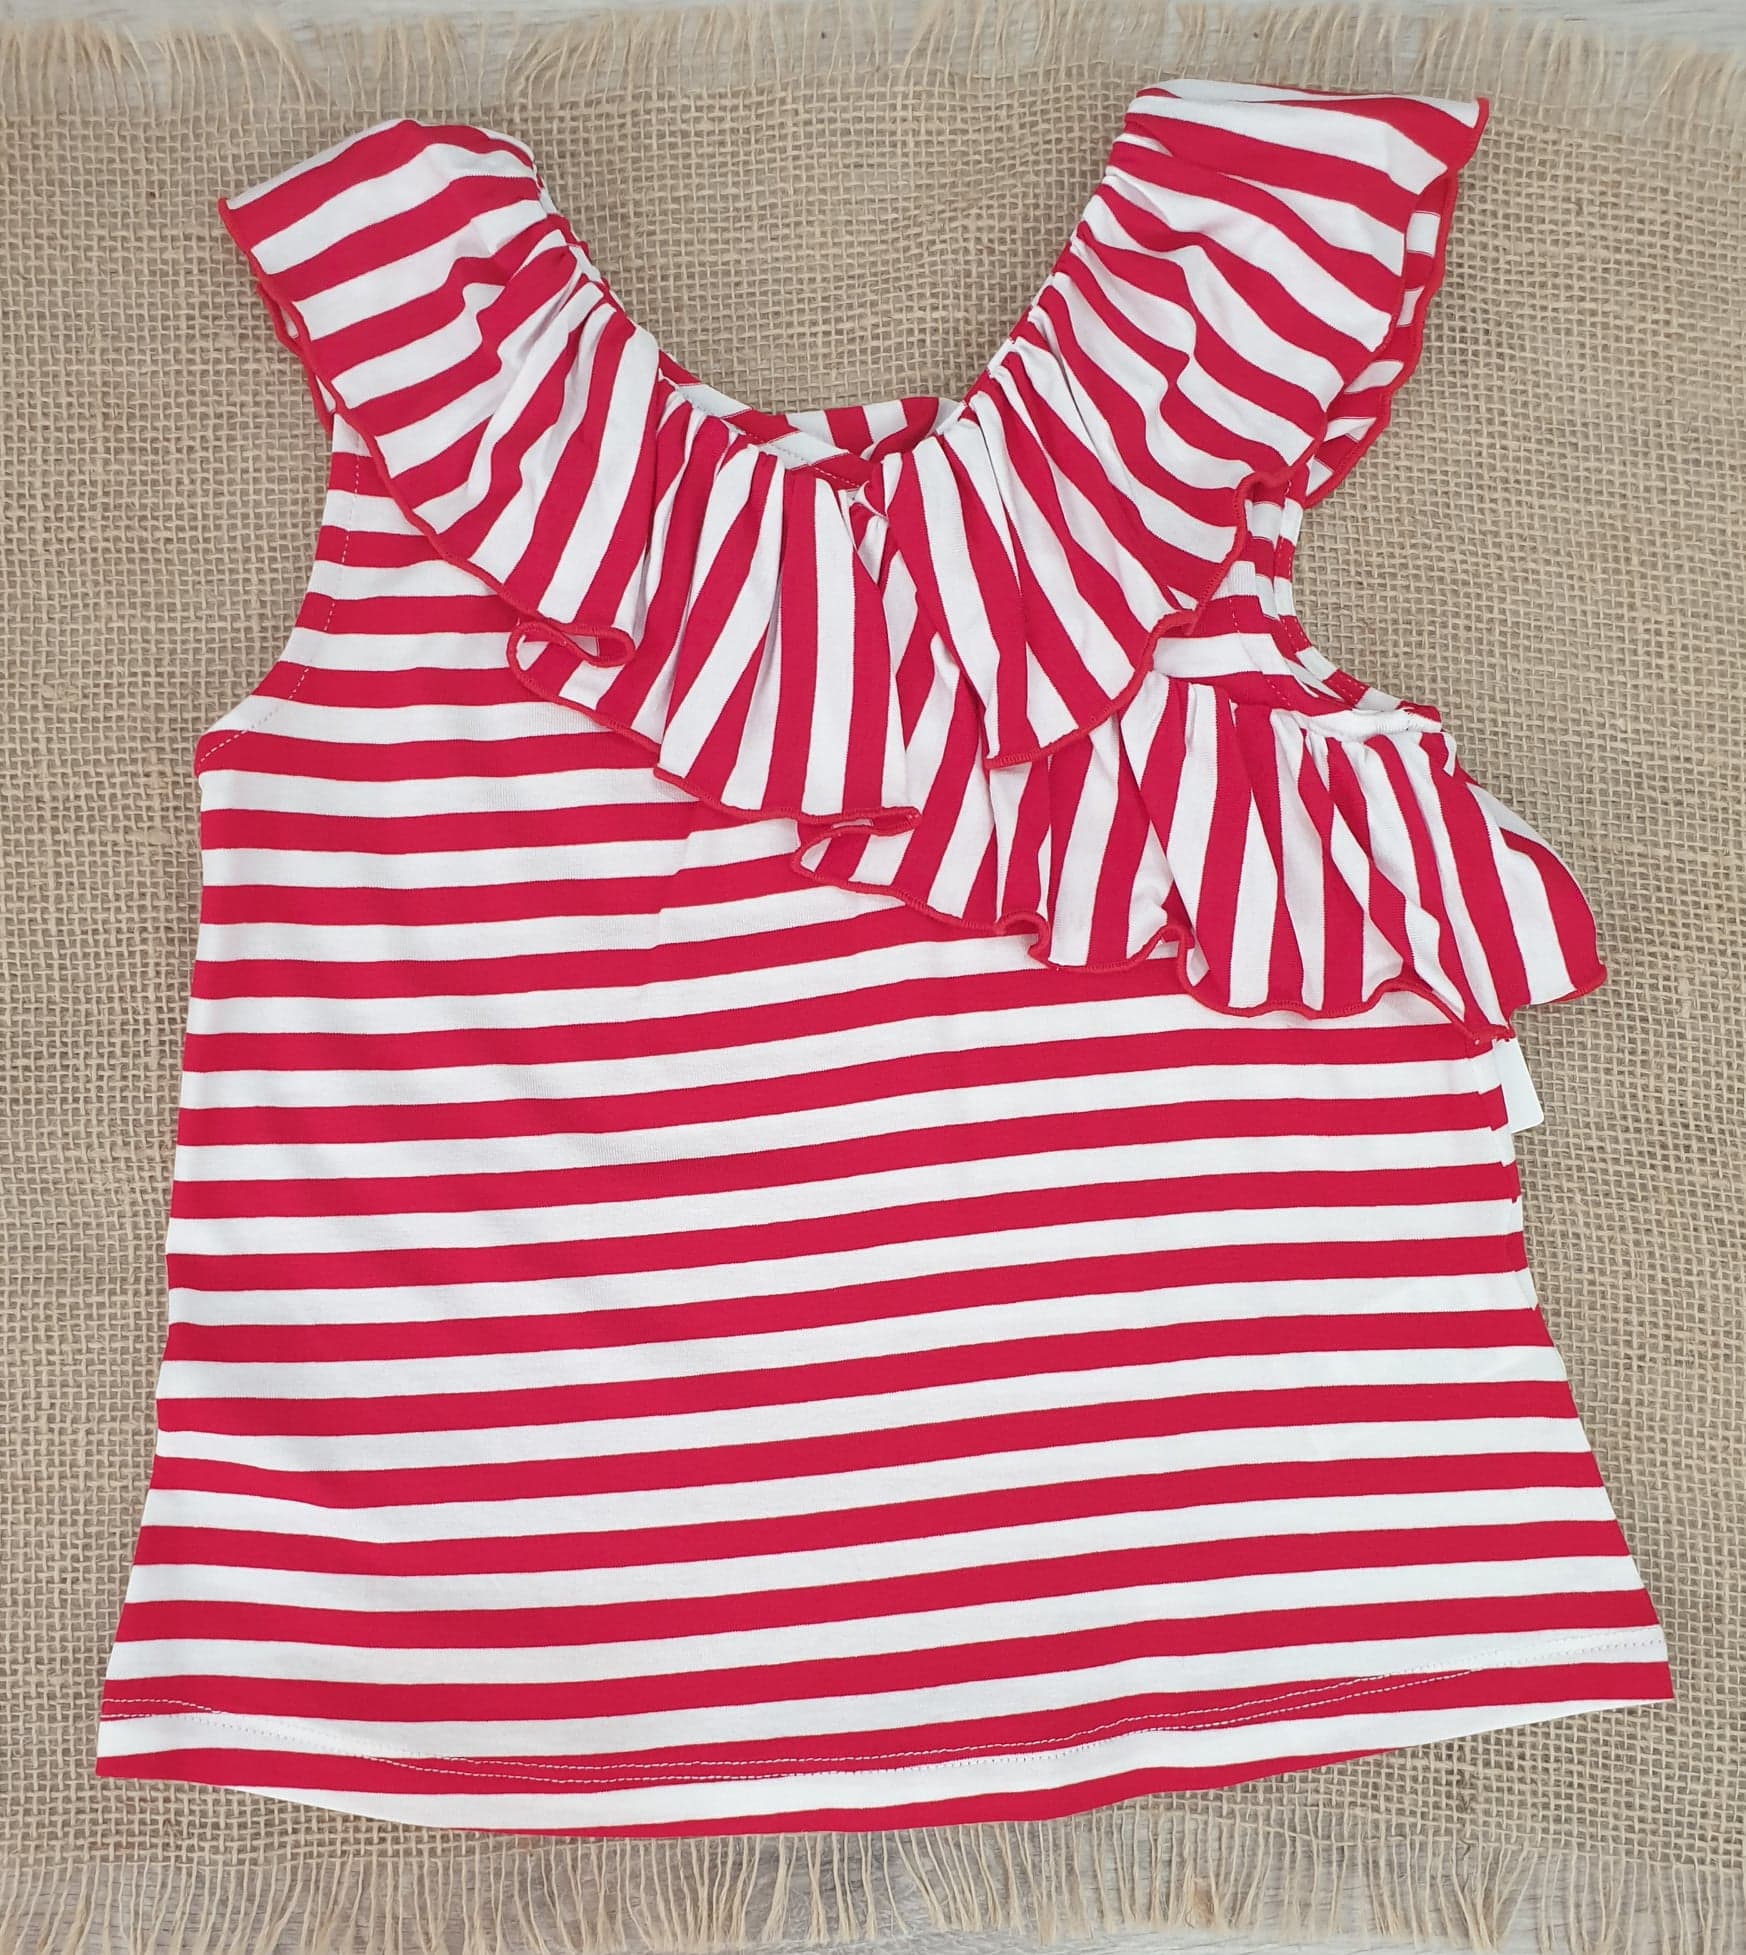 Camiseta niña rayas roja volante R240510 - Tienda moda infantil online